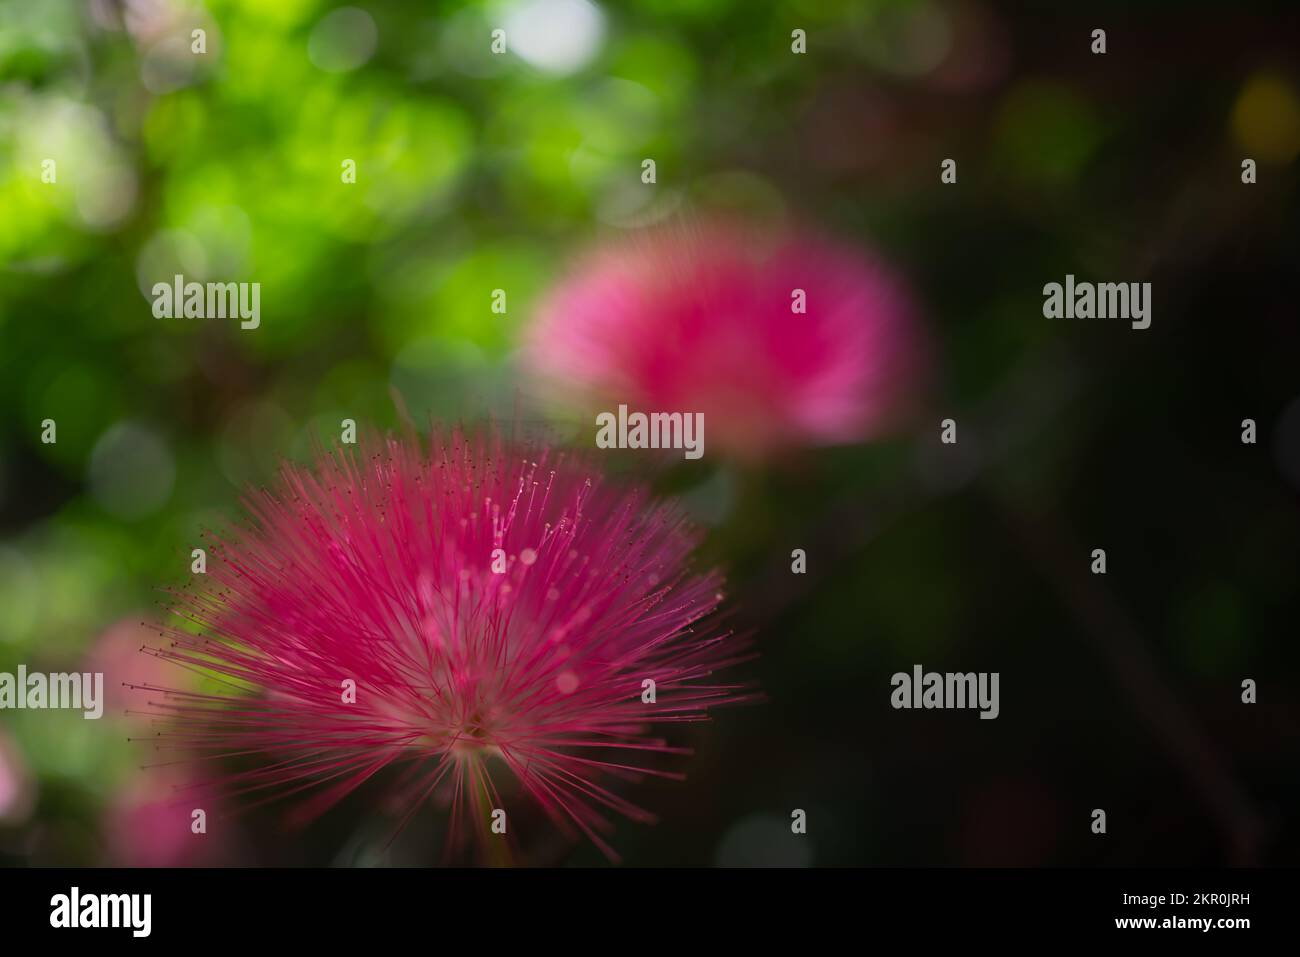 Flauschige rosafarbene Blüten aus rosafarbenem Pulverpuffer. Unscharfes Grün hinterlässt einen Hintergrund Stockfoto